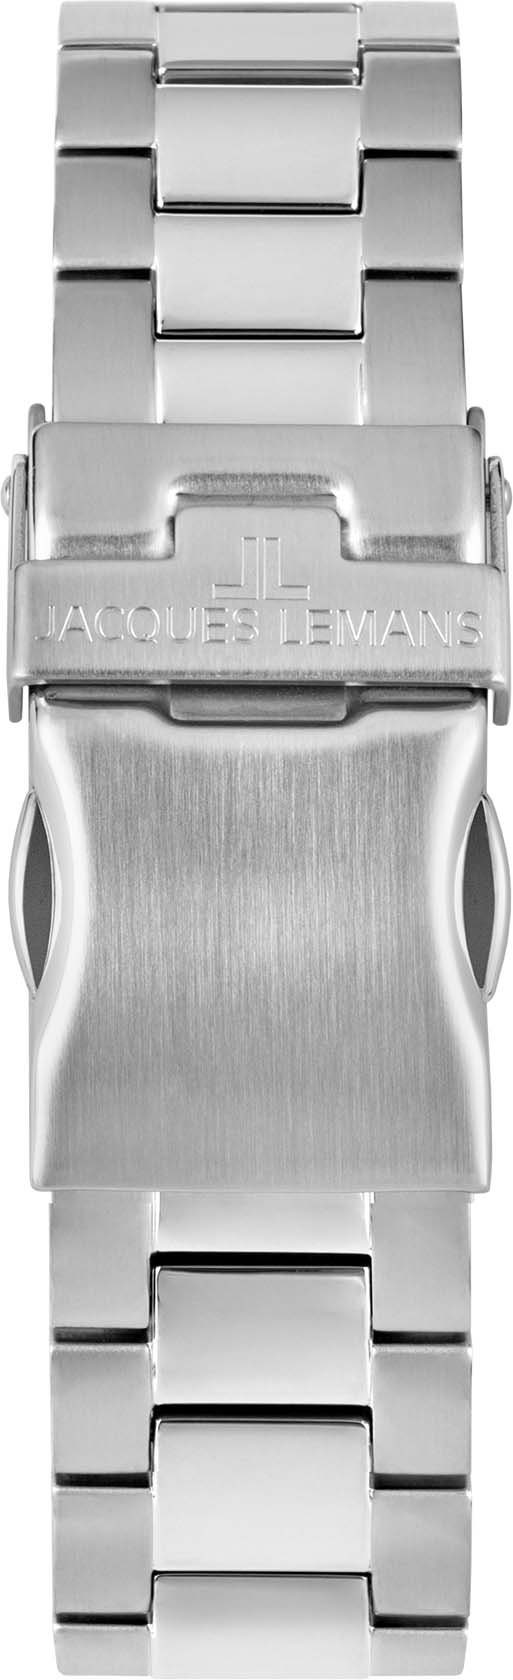 Jacques Lemans 42-11E schwarz Multifunktionsuhr